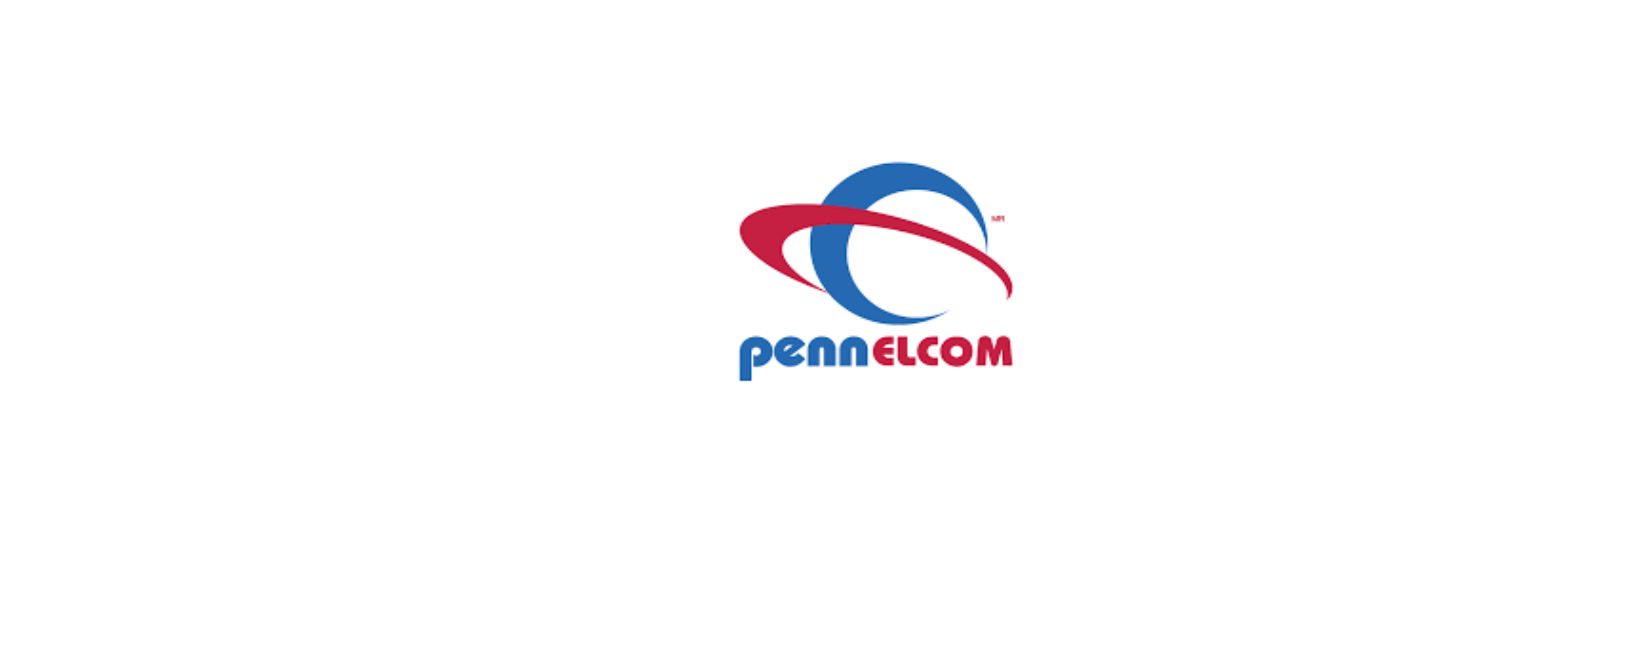 Penn Elcom Discount Codes 2022